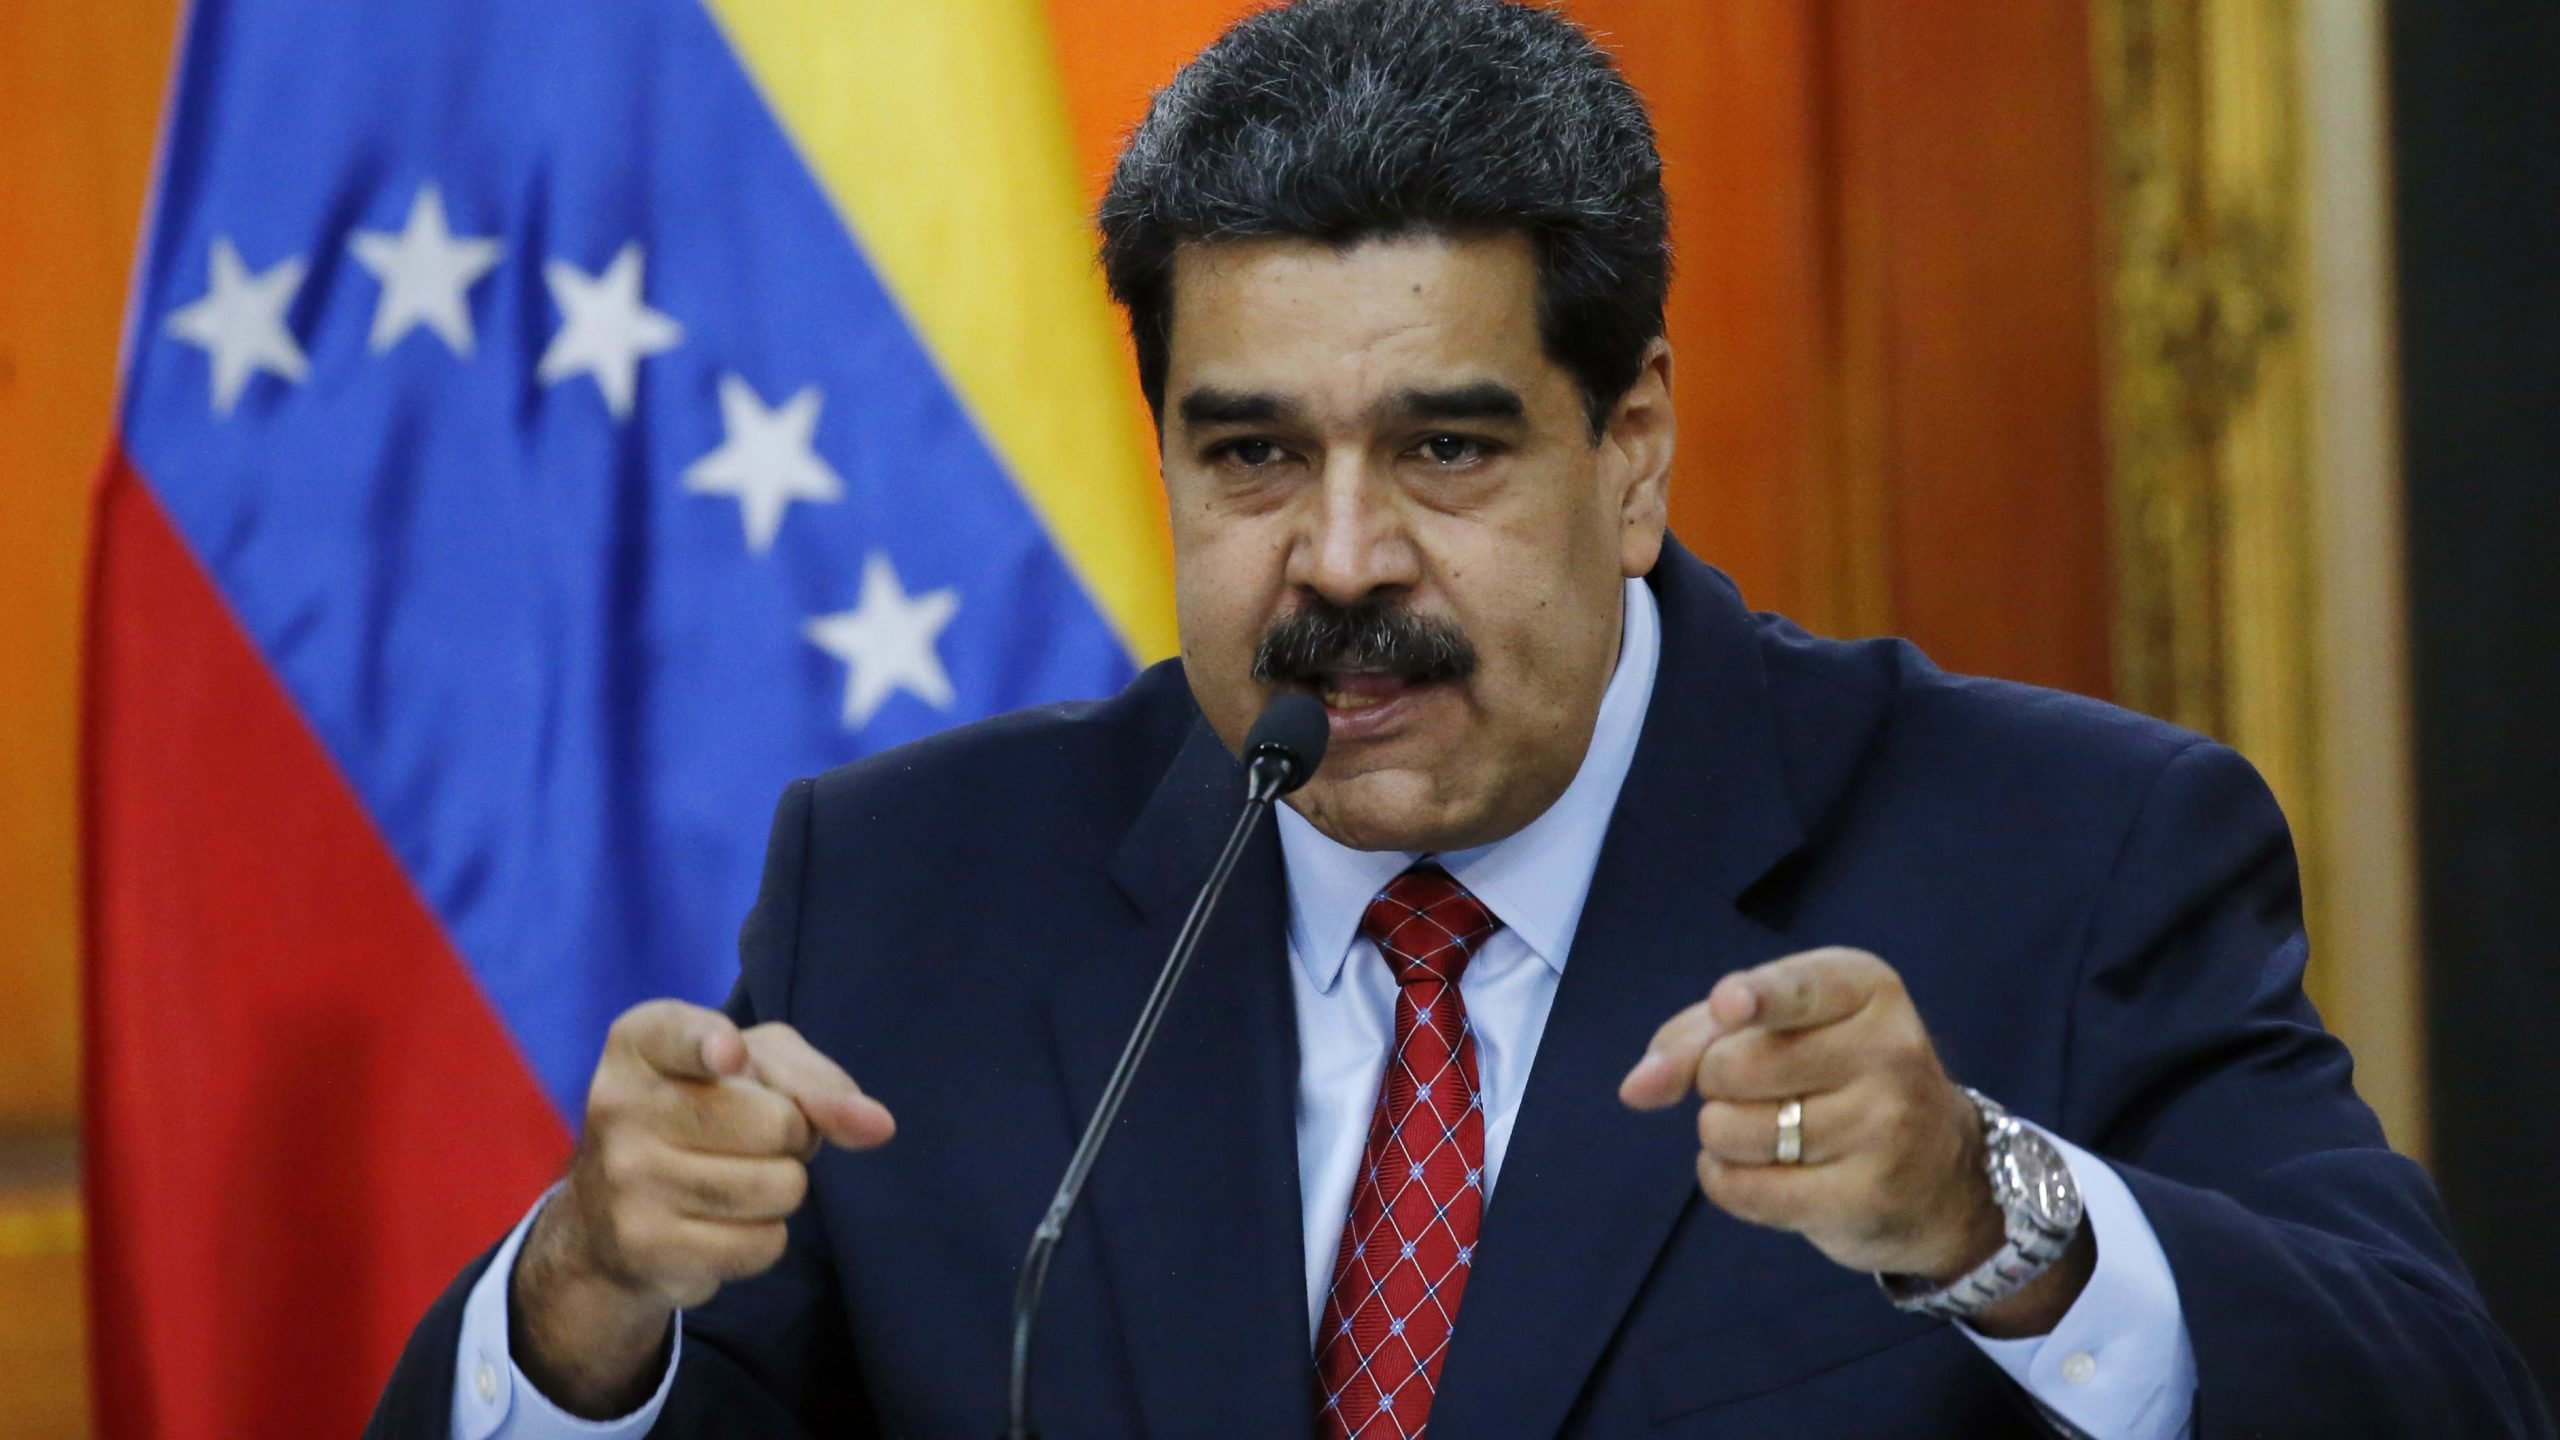 Maduro: Uskoro moguć nastavak pregovora sa opozicijom u Venecueli 1